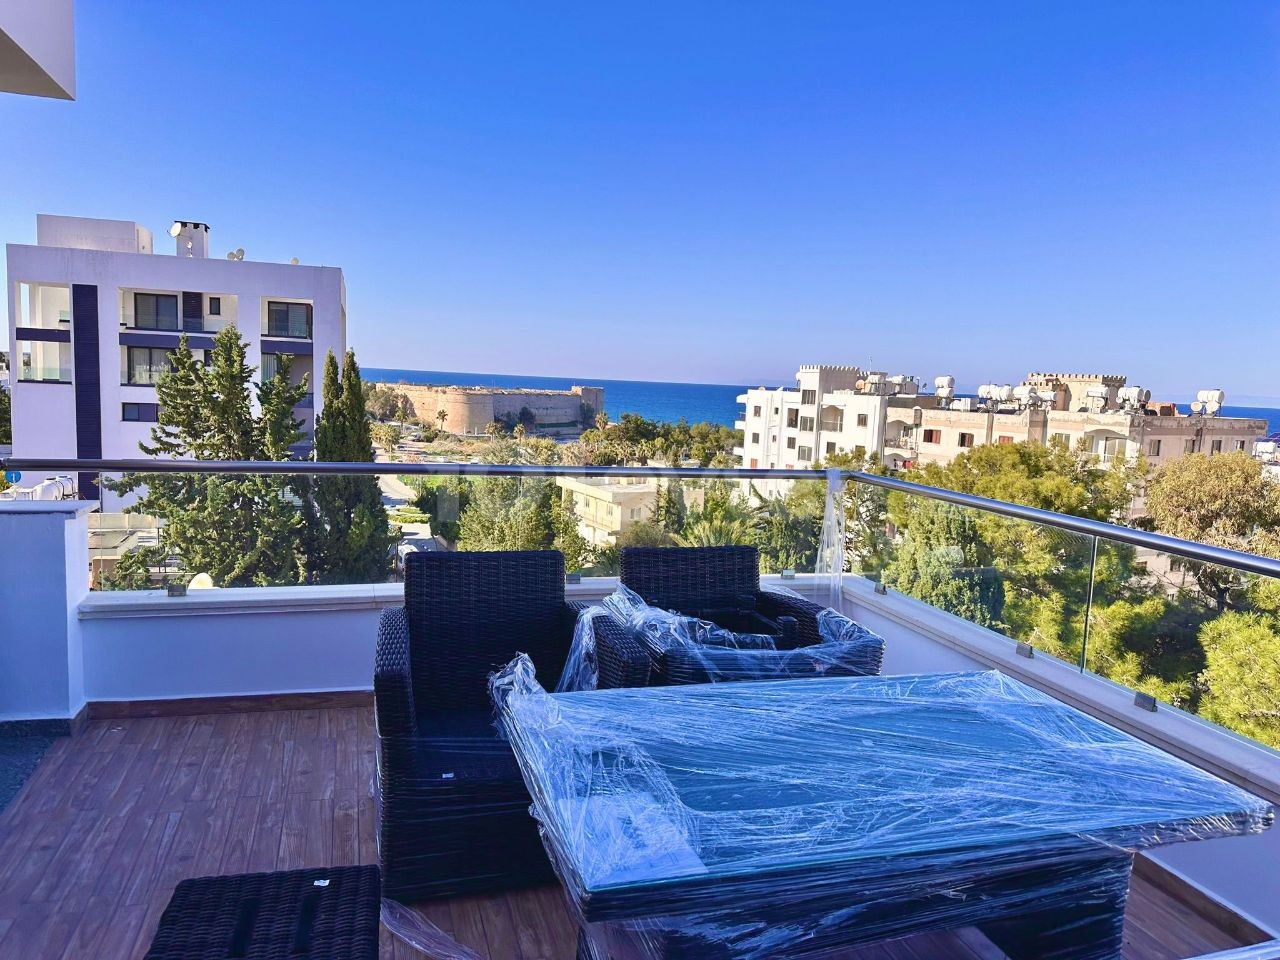 Ultraluxuriöse 3+1-Penthouse-Wohnung zur Miete in herrlicher Lage im Zentrum von Kyrenia, mit Blick auf das Meer und die Burg, nur wenige Gehminuten vom Markt entfernt